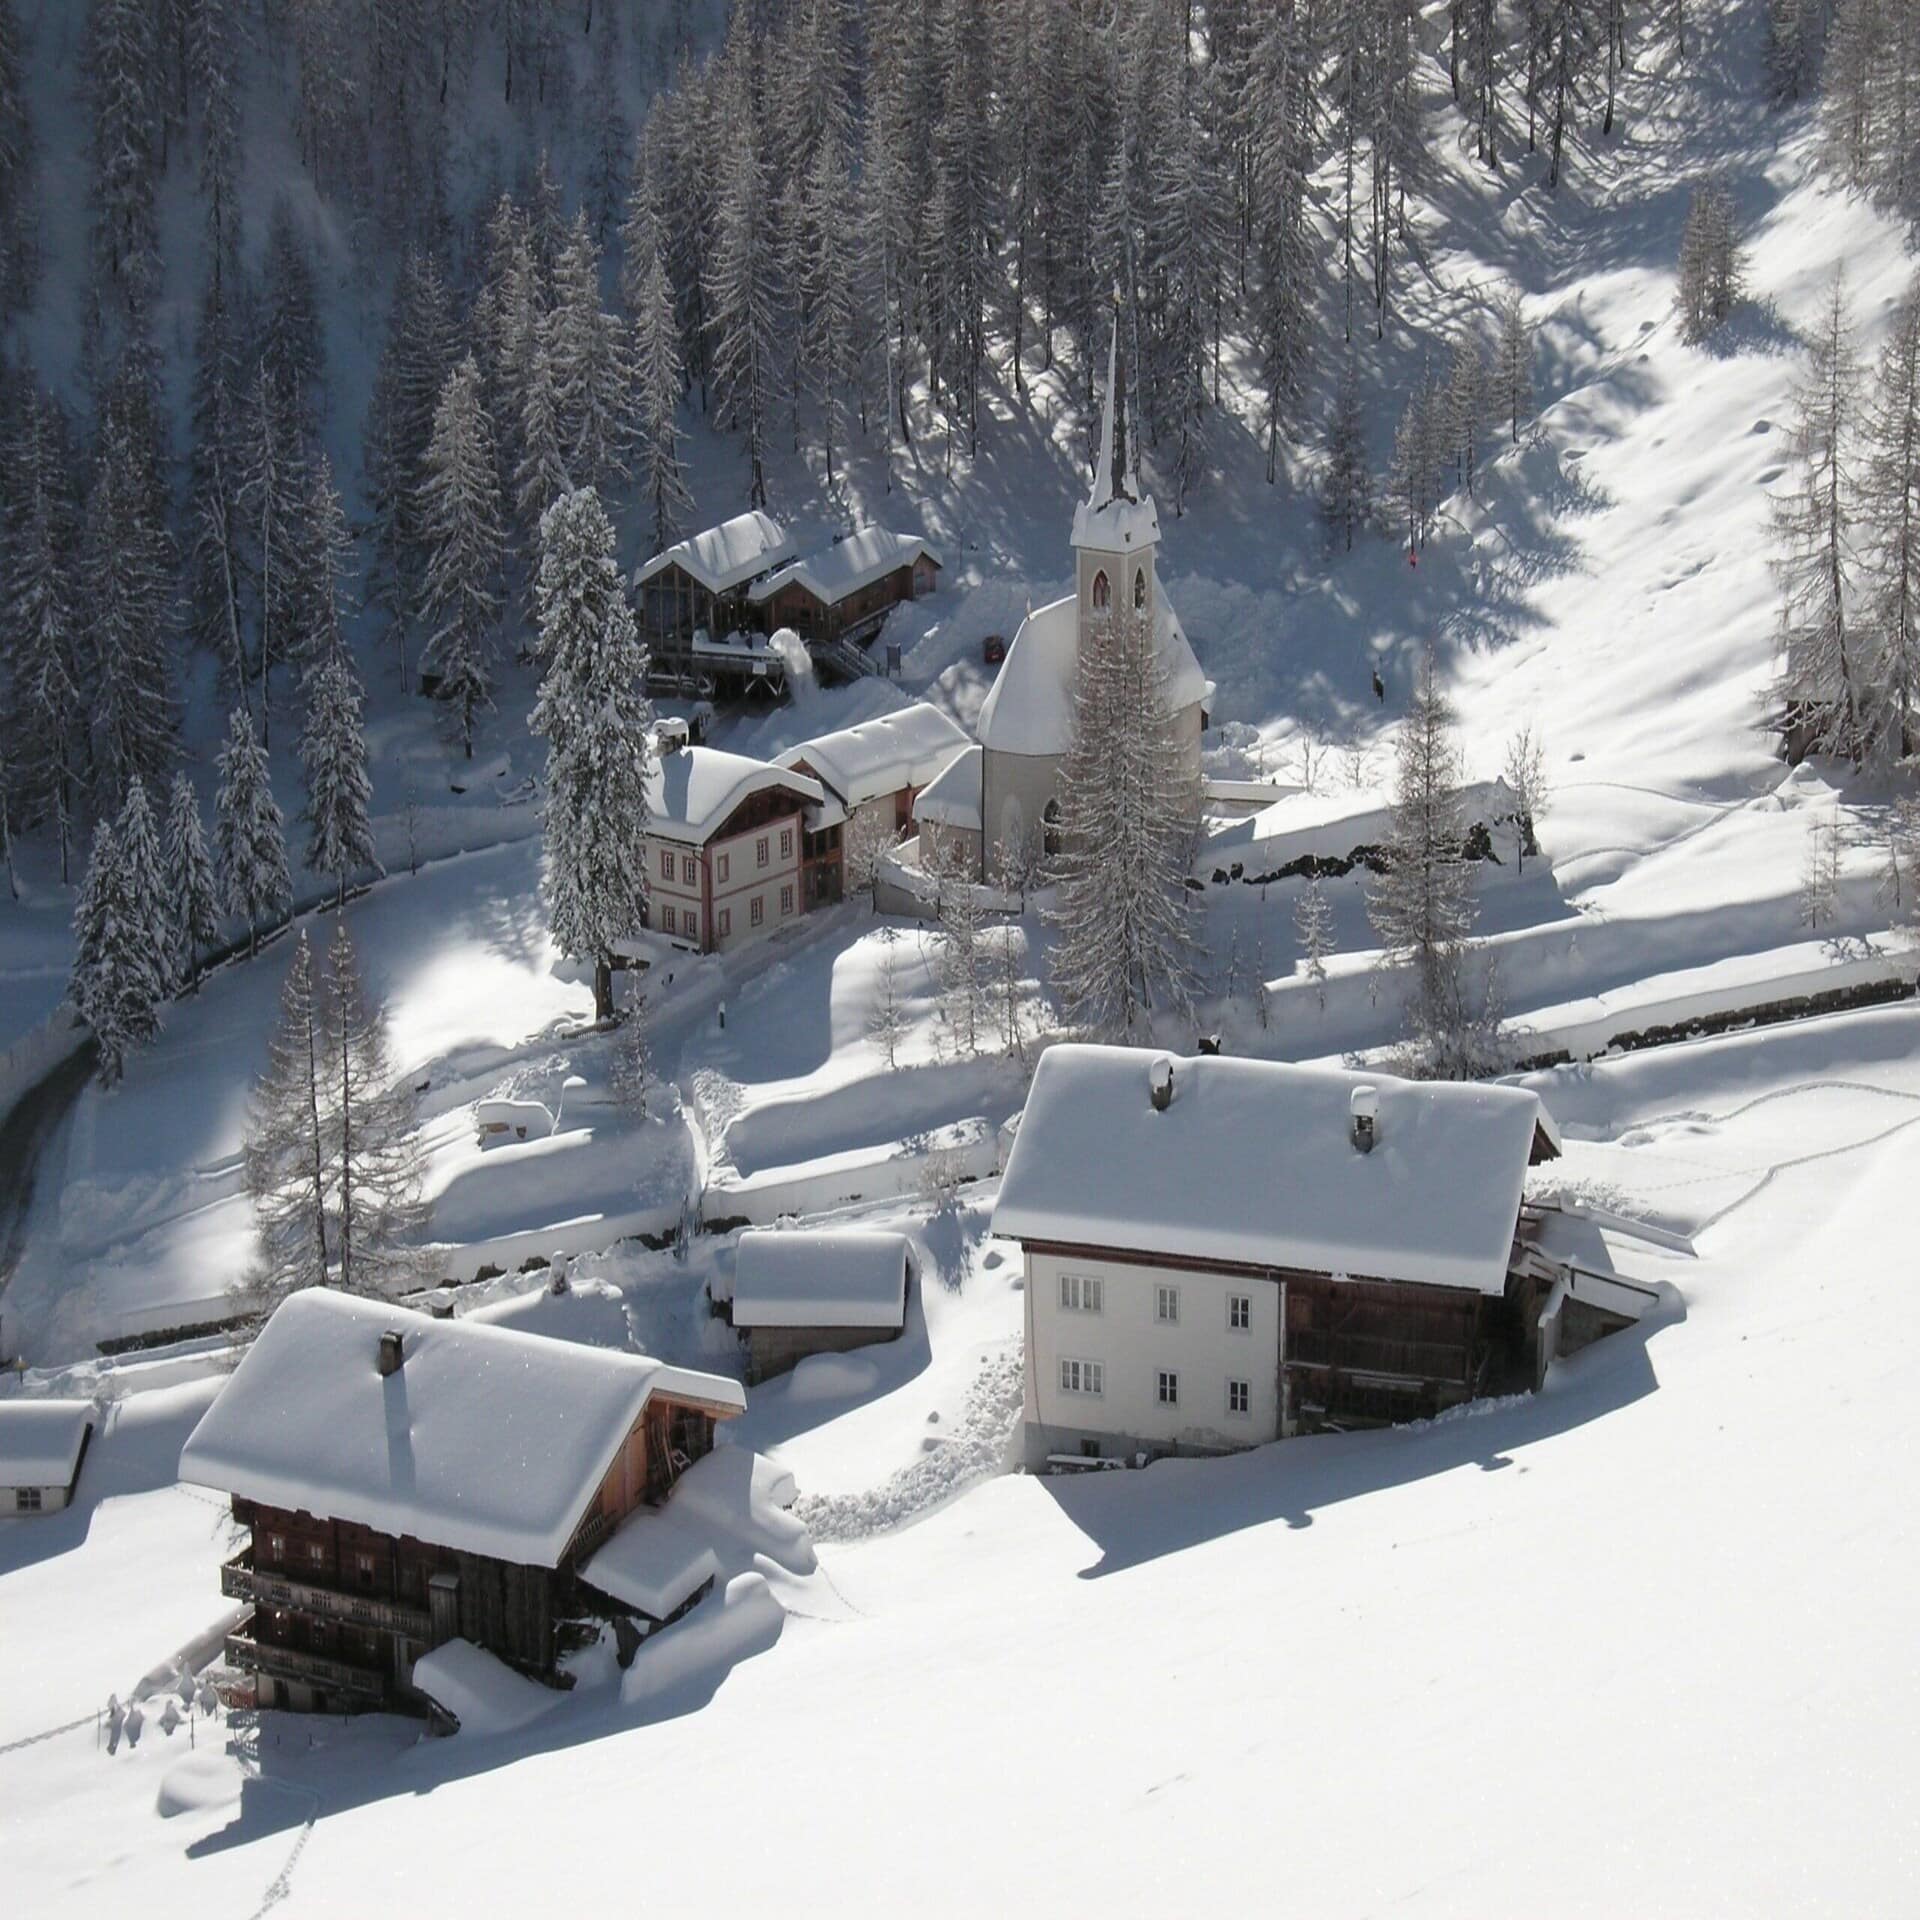 Luftaufnahme von verschneiten Häusern in verschneiter Umgebung